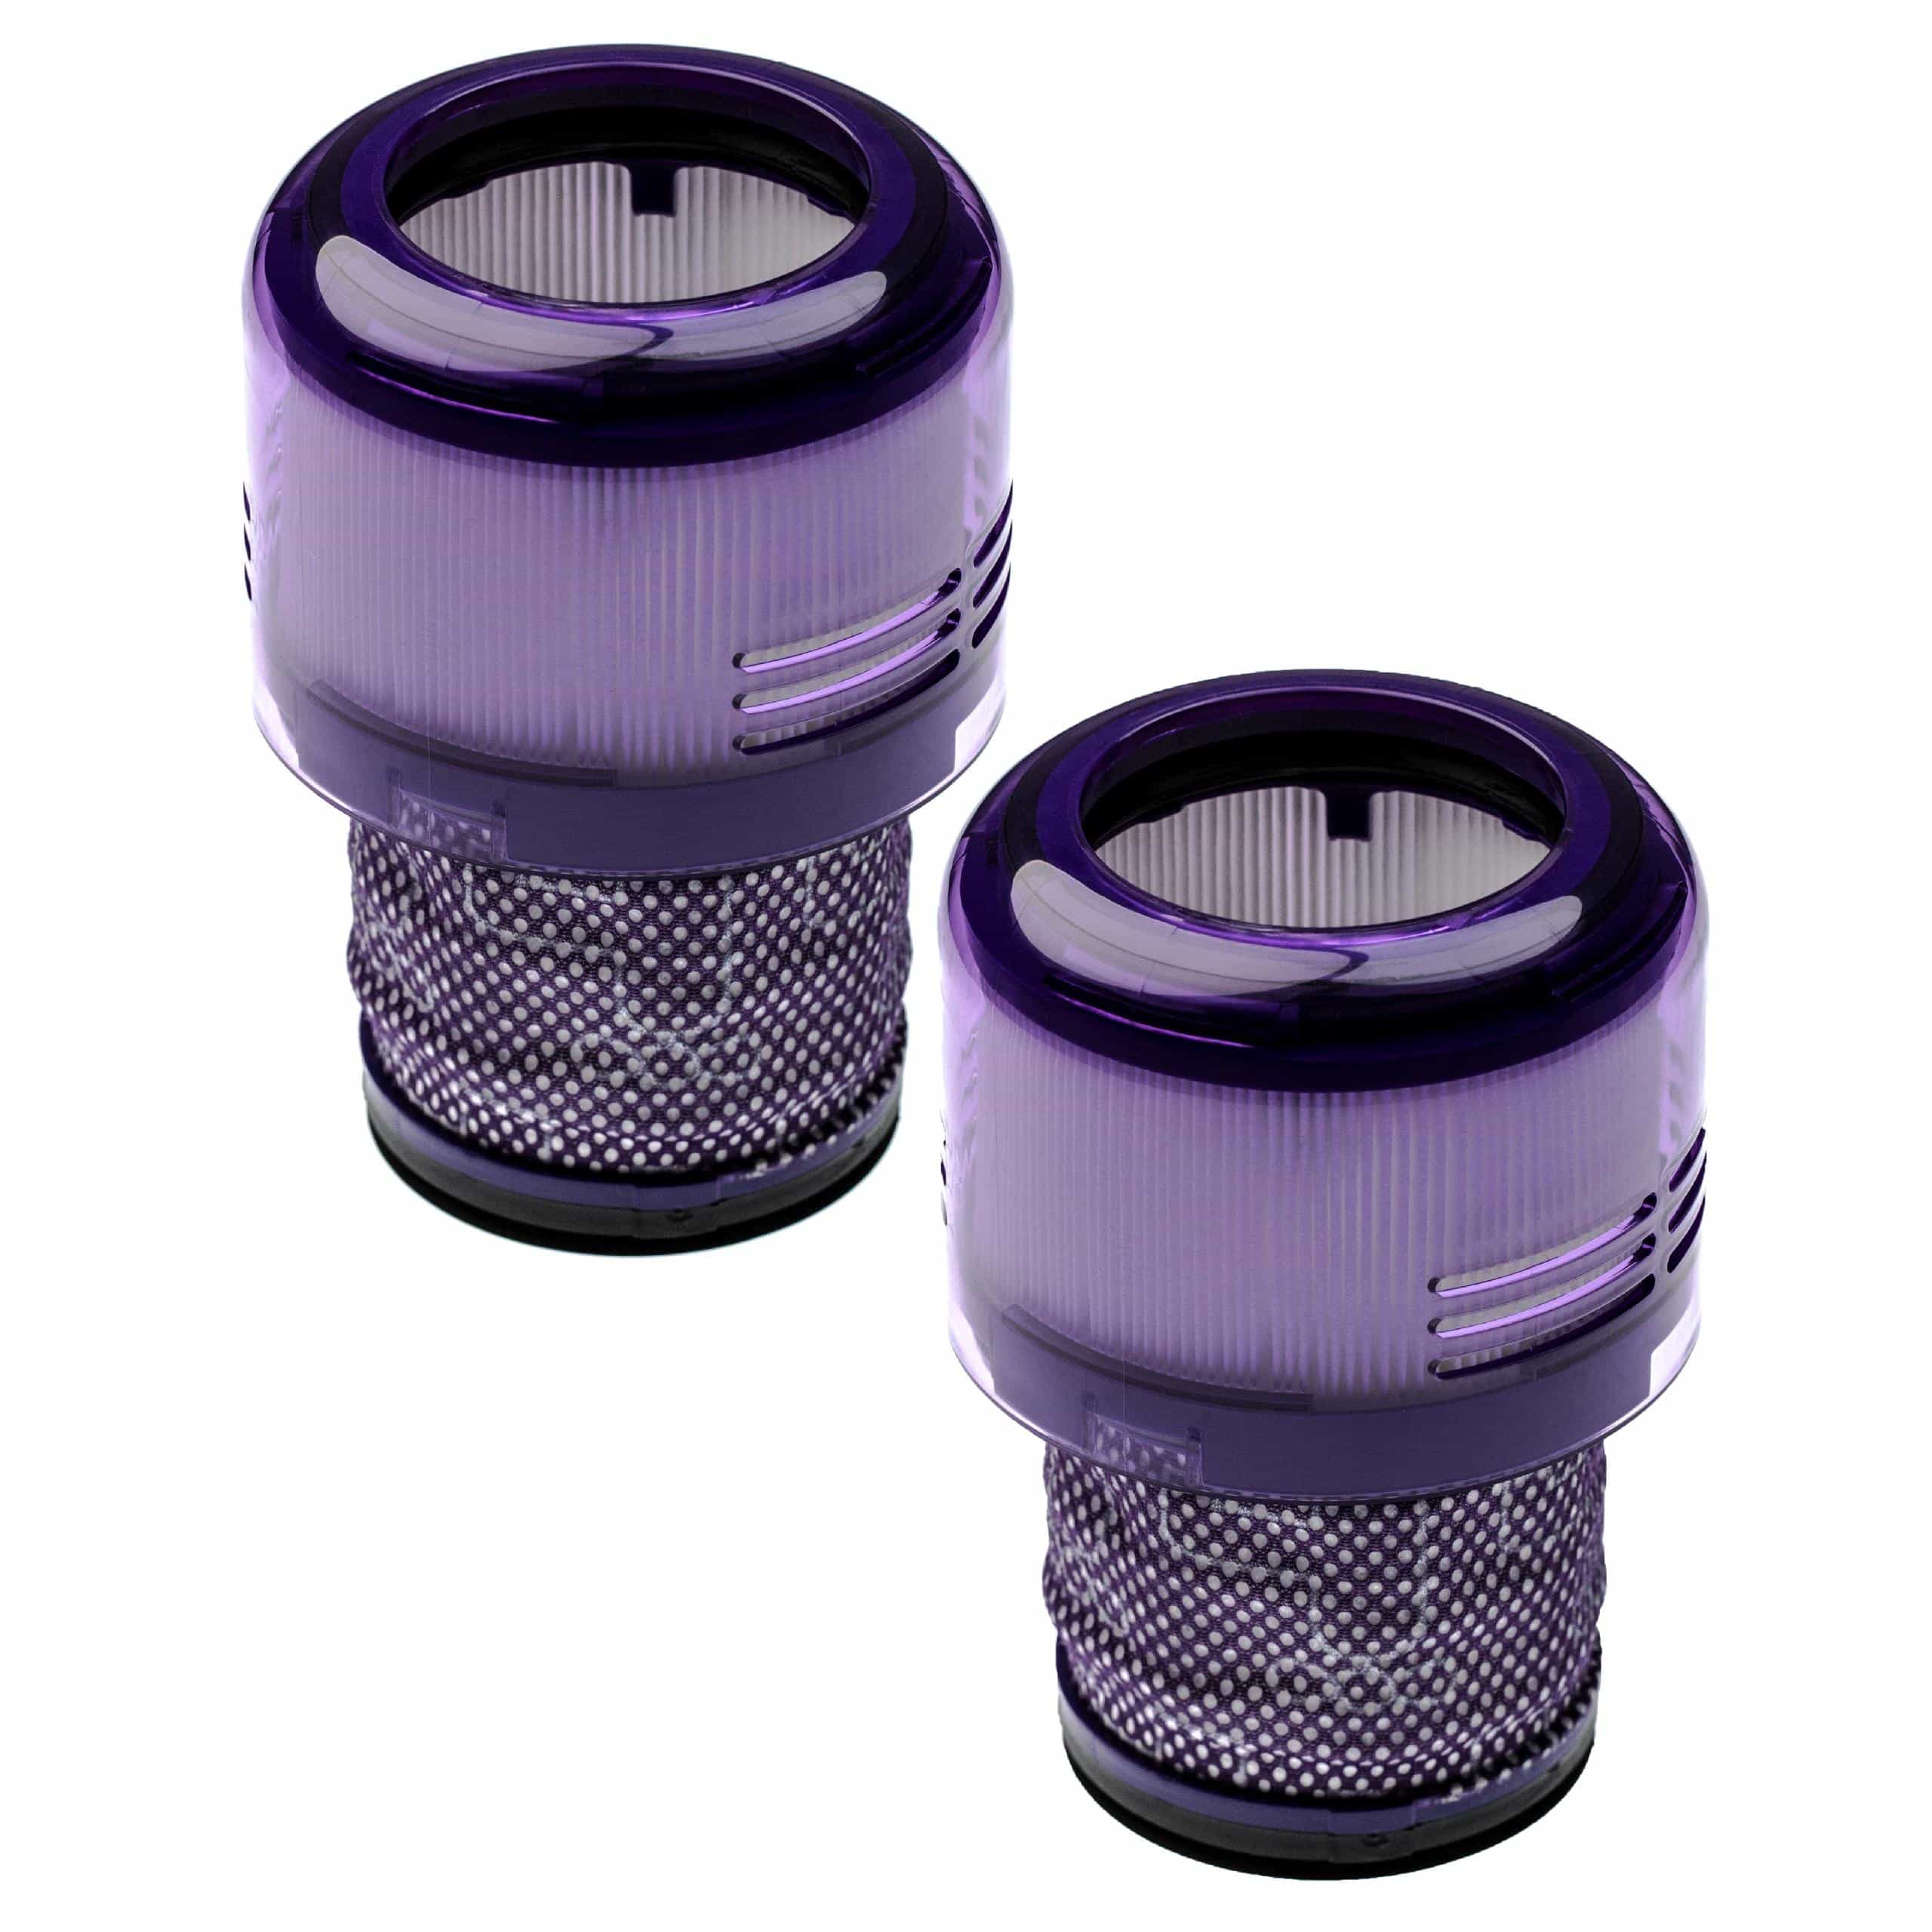 2x Filtre remplace Dyson 97001302, 970013-02 pour aspirateur - filtre anti-saleté